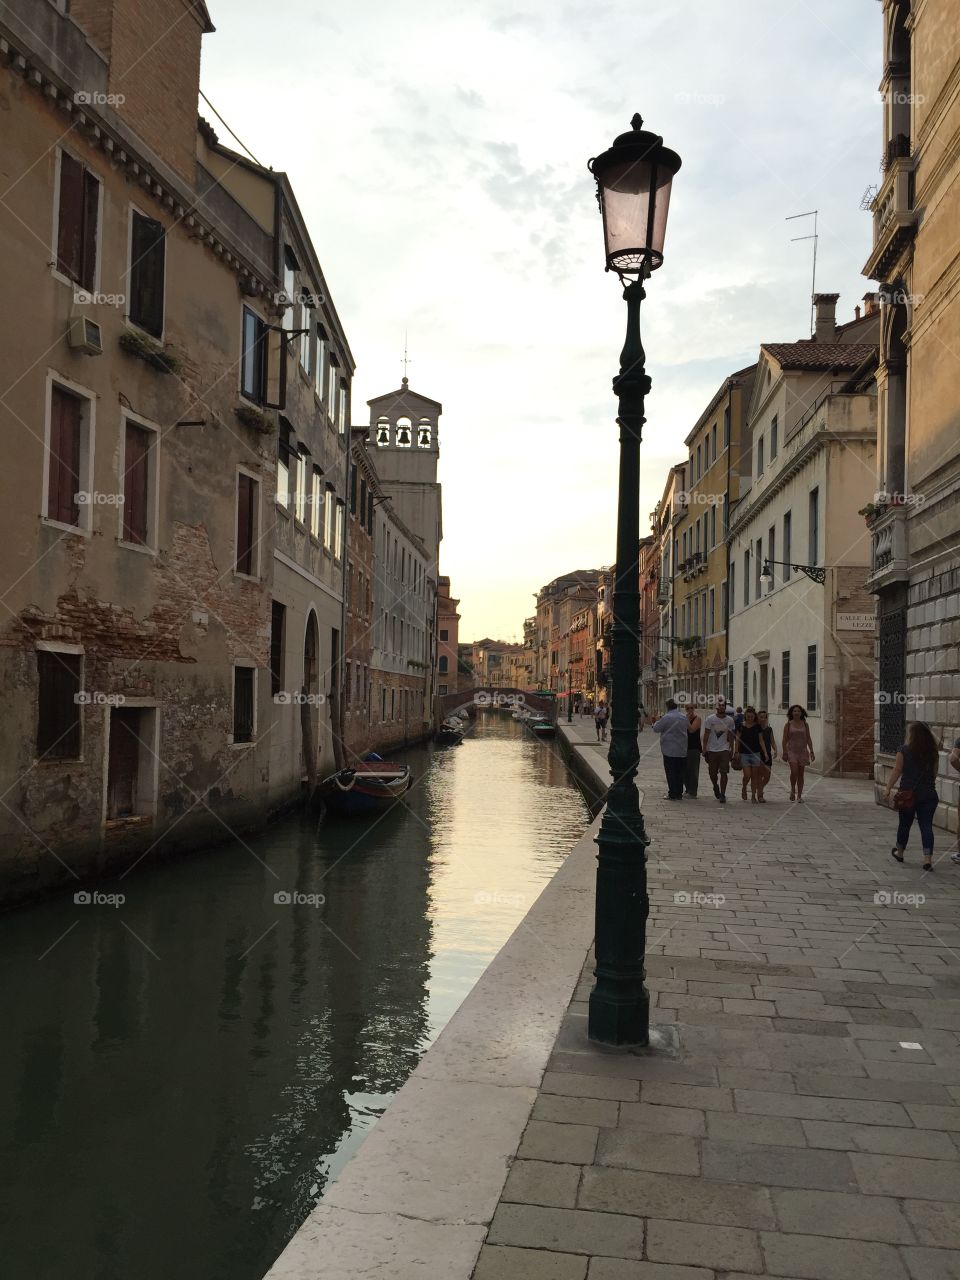 Lamp in Venice 